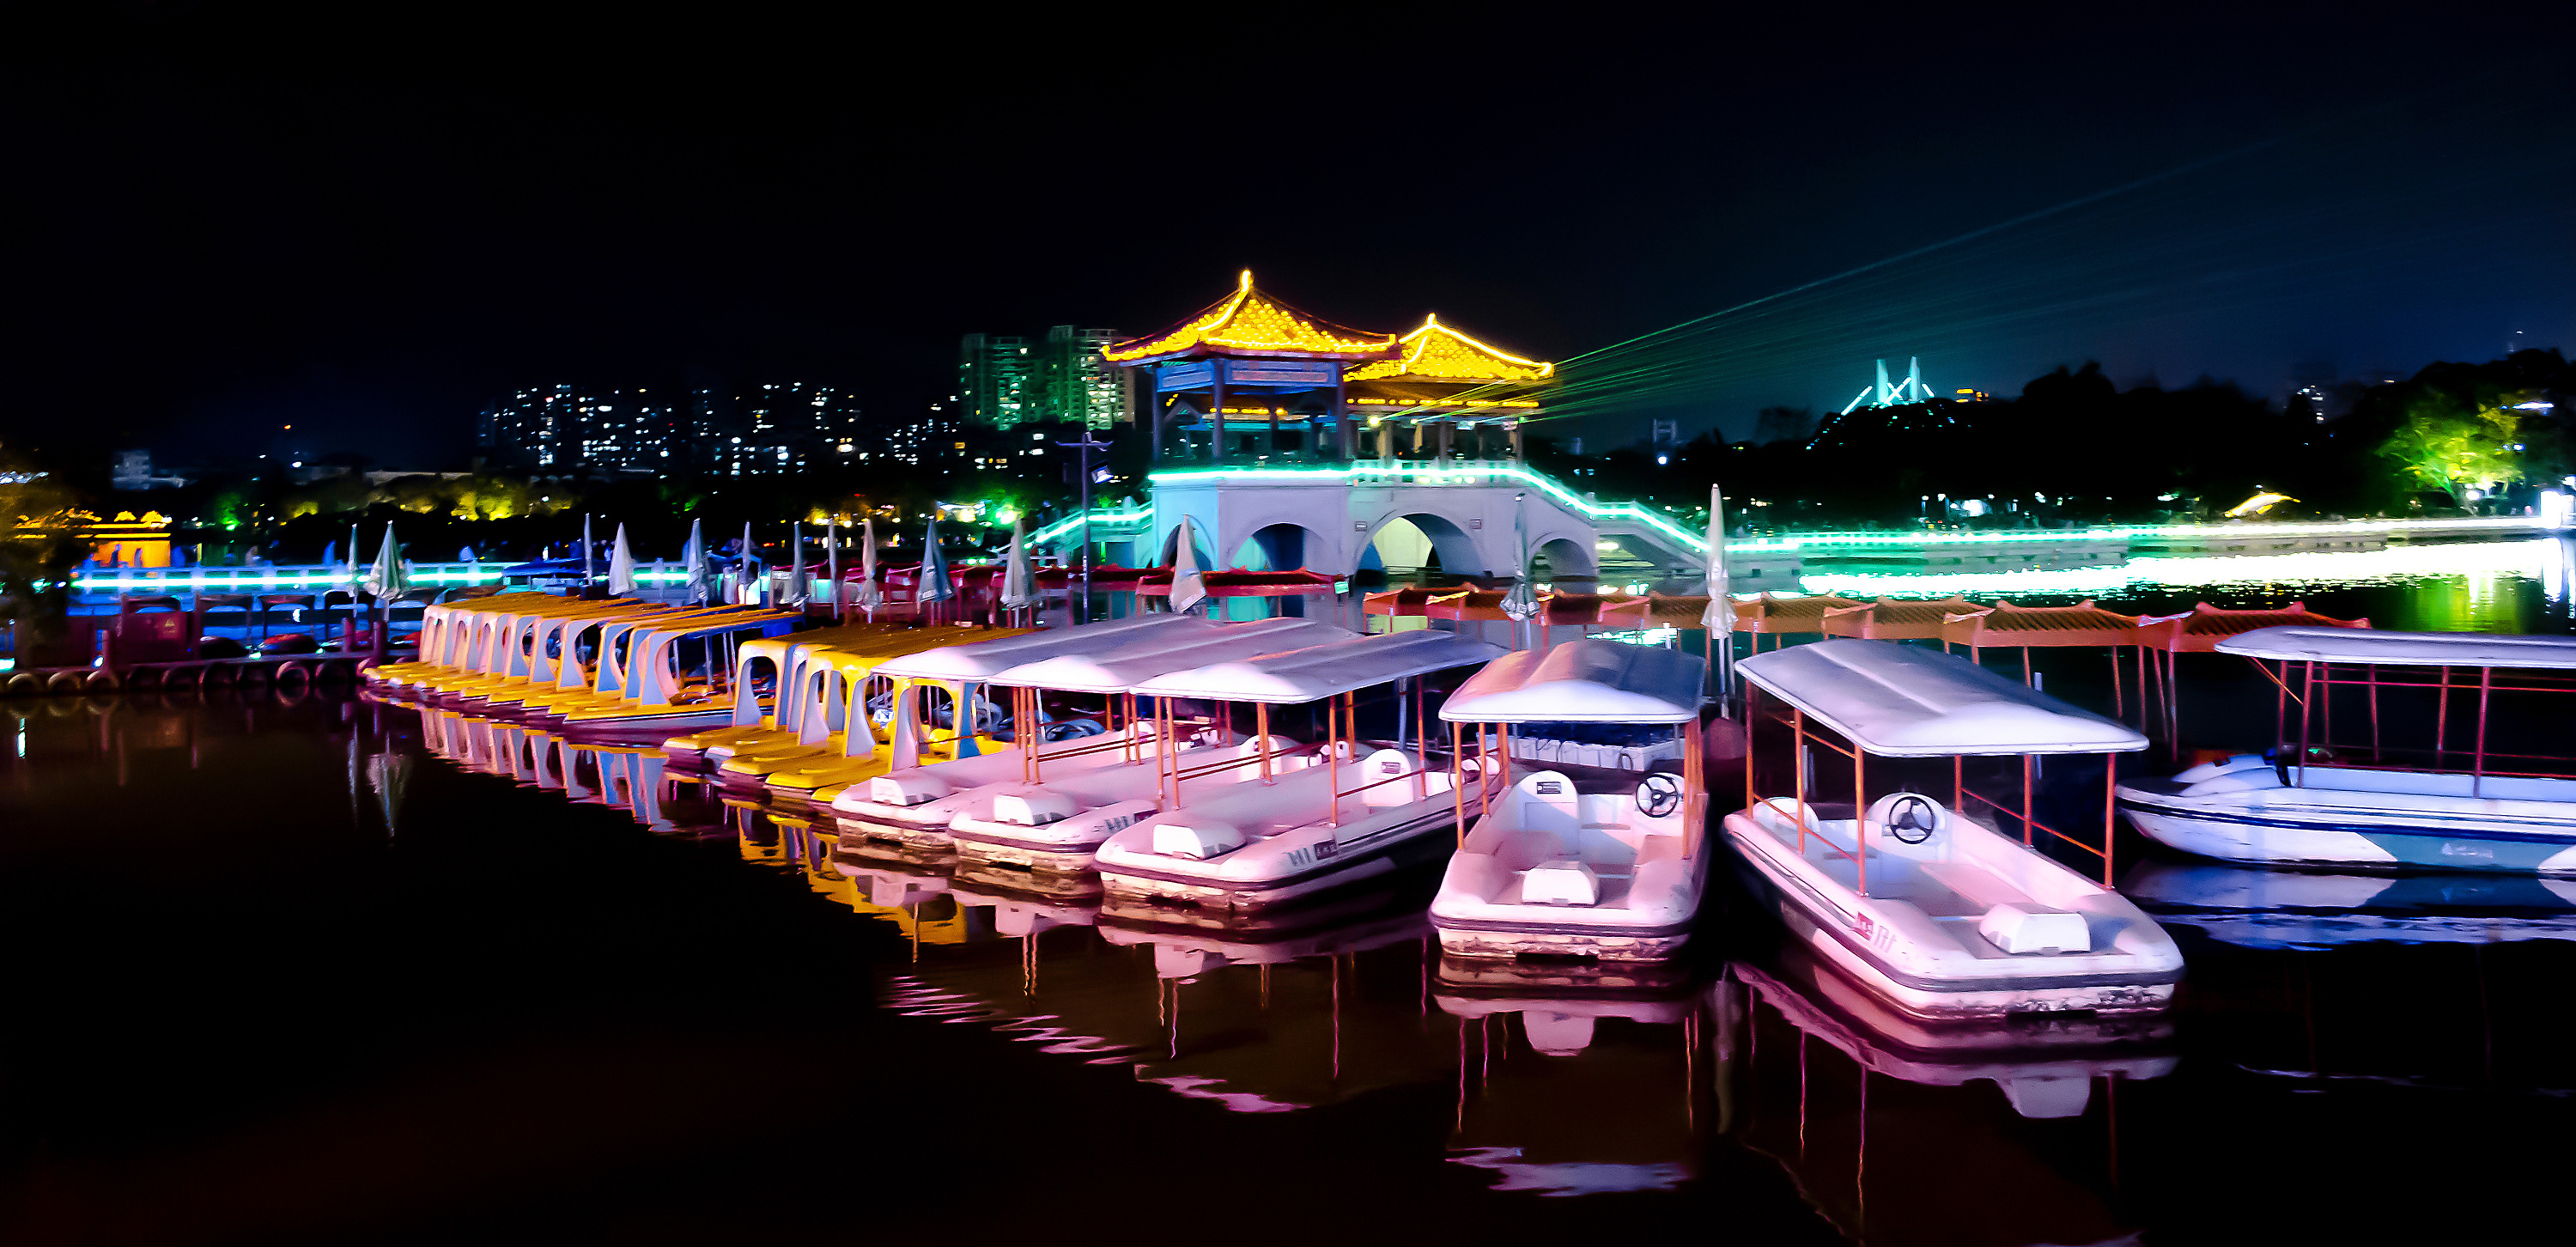 惠州西湖夜景图片大全图片